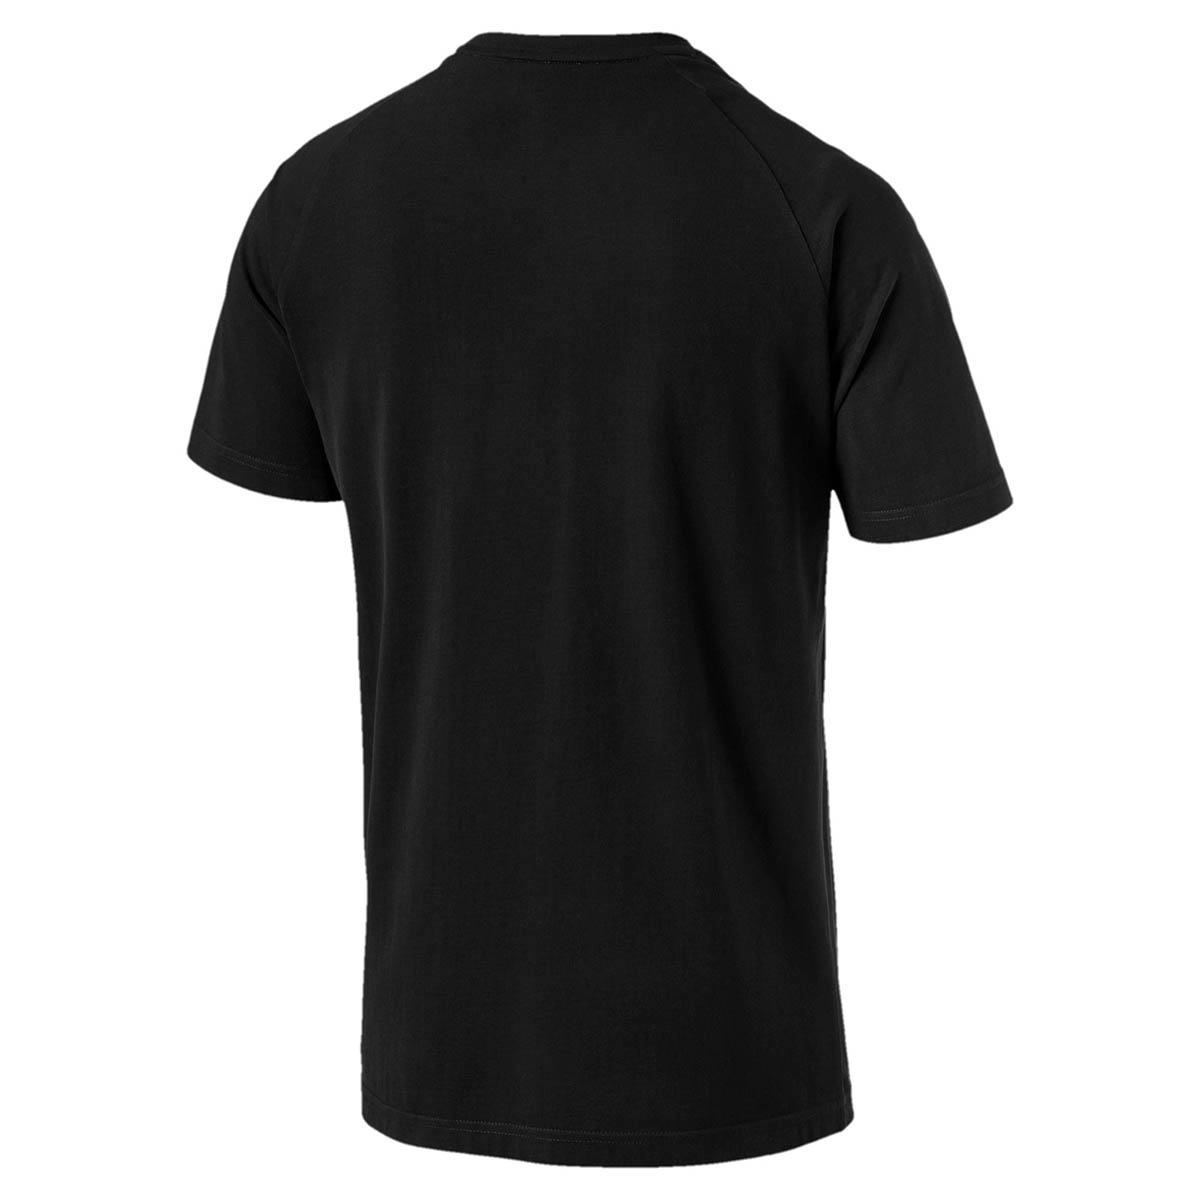 PUMA Athletics Graphic Tee Herren T-shirt Sportswear 855134 01 schwarz